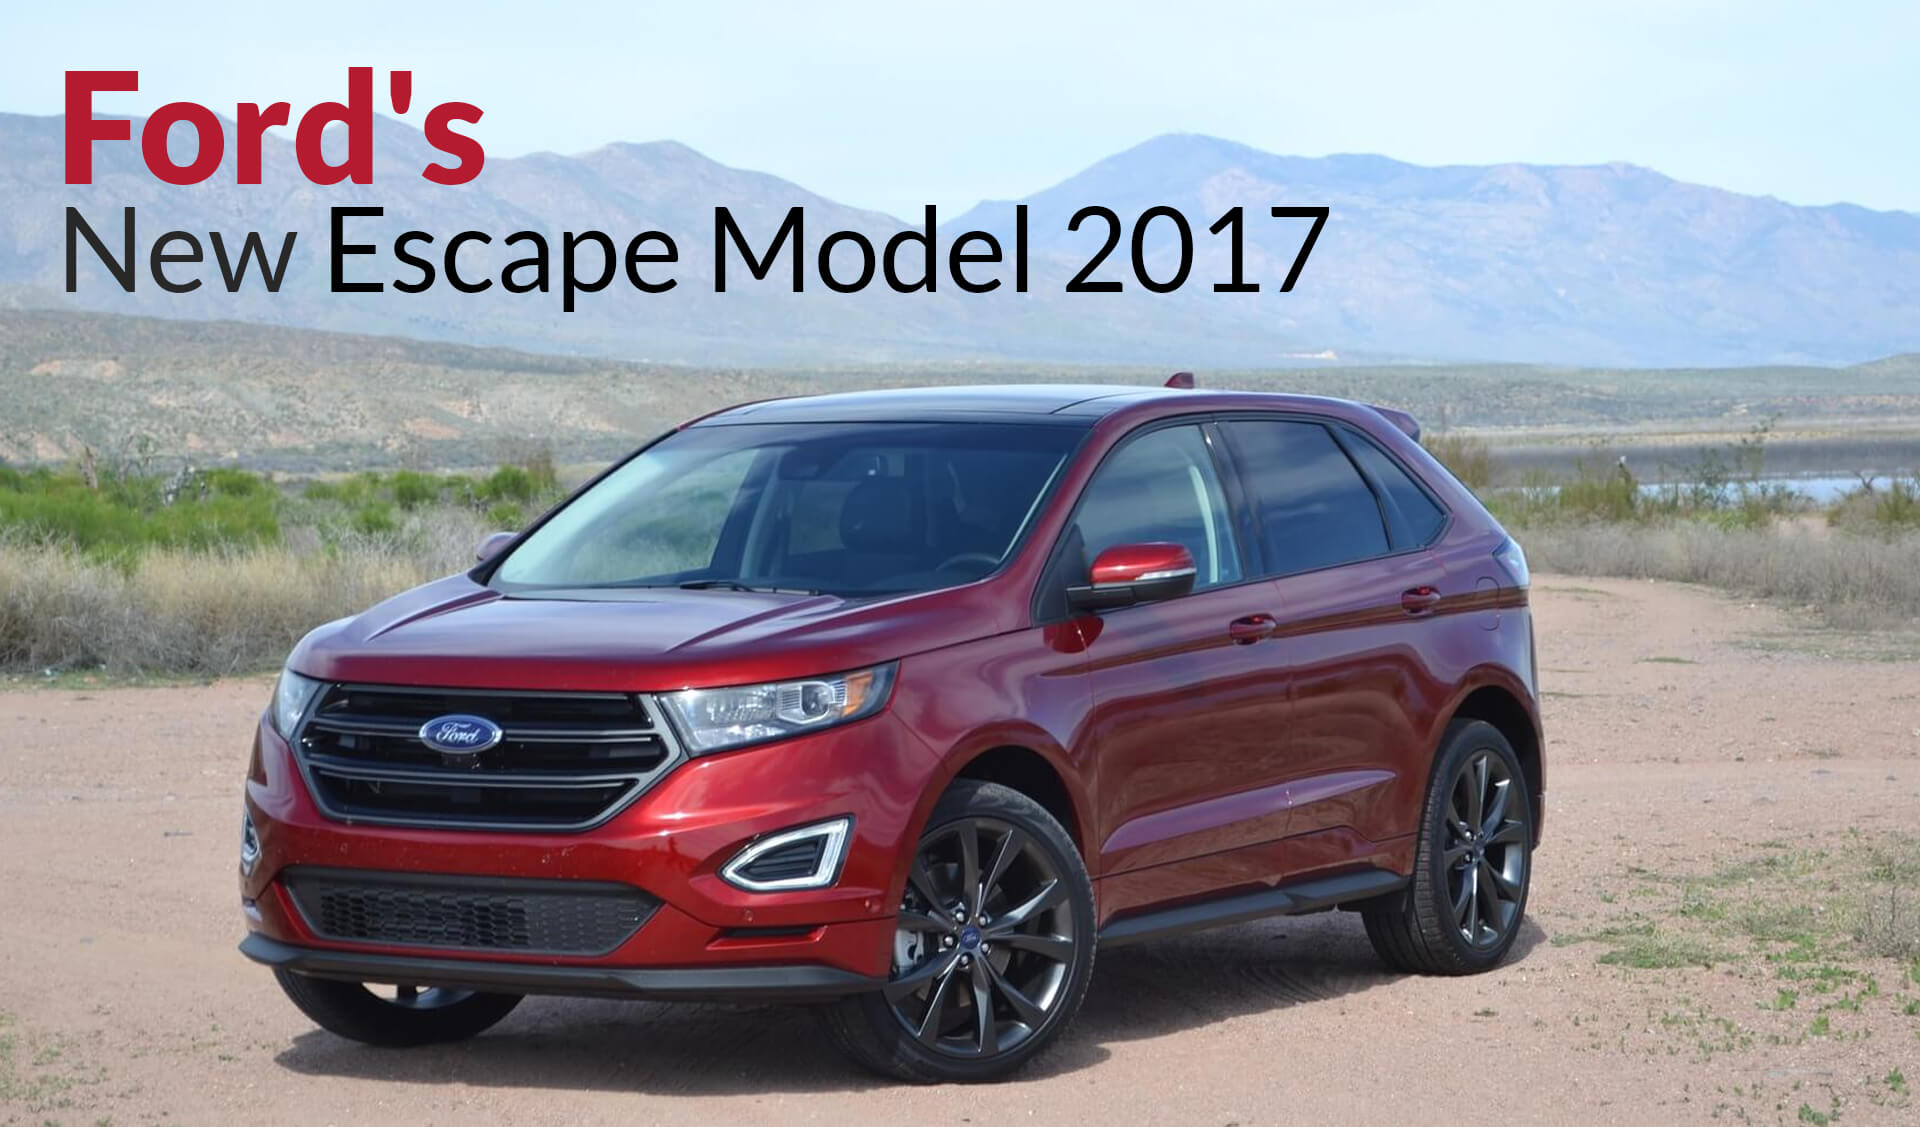 Ford's New Escape Model 2017